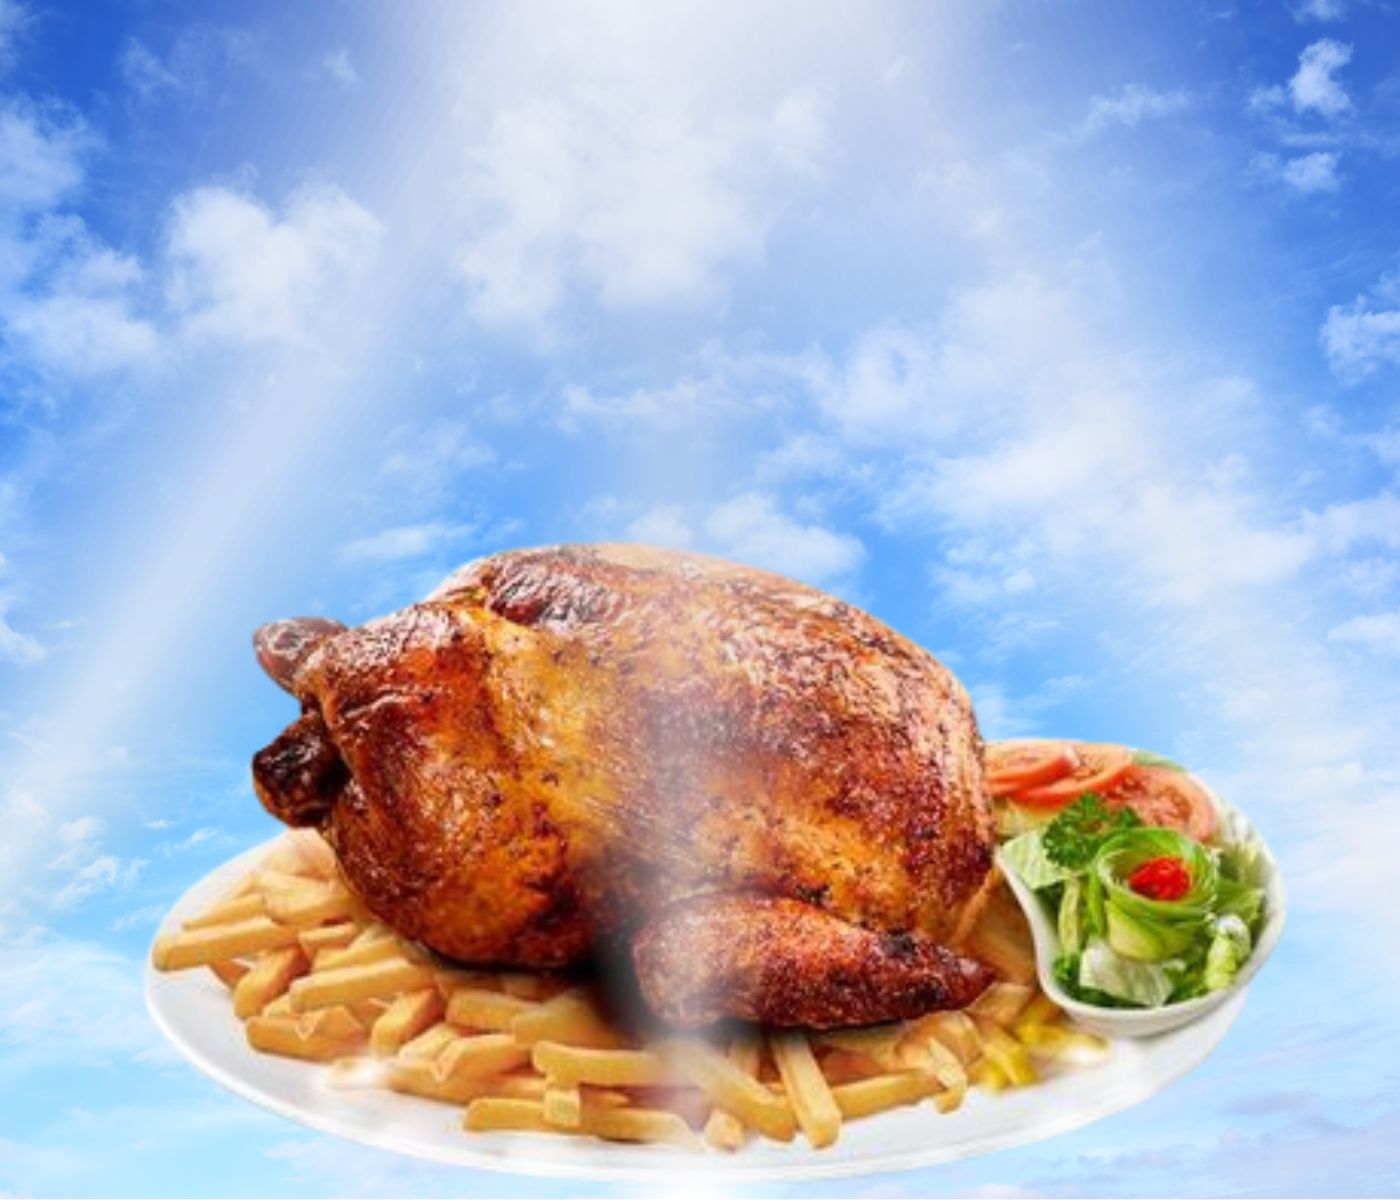 PERÚ: Celebra “Día del Pollo a la Brasa” este domingo 21 de julio